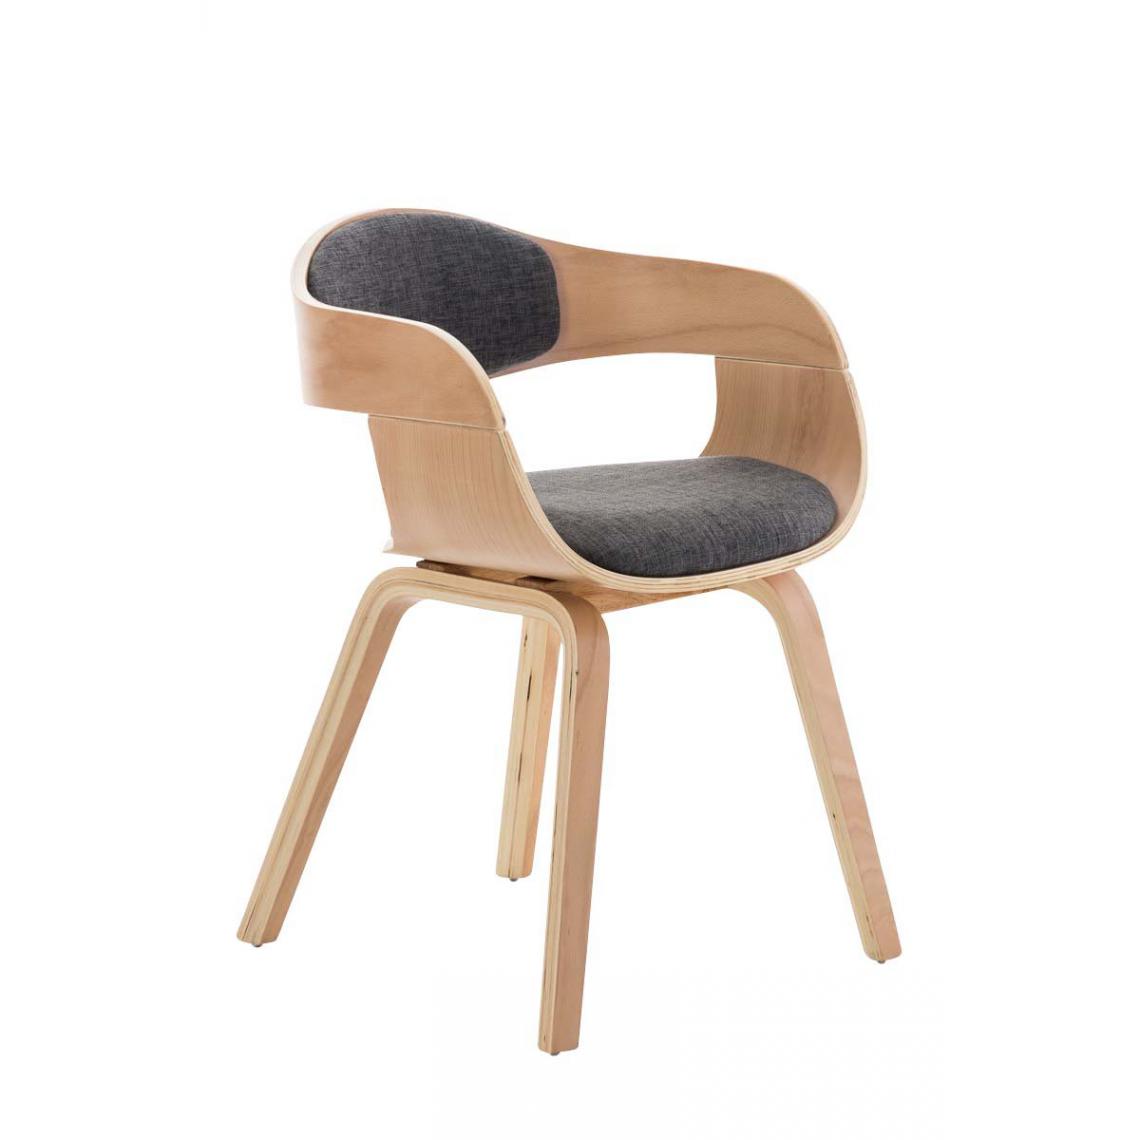 Decoshop26 - Chaise de bureau sans roulettes visiteur en tissu et bois design retro et confort maximal naturel et gris clair BUR10542 - Bureaux